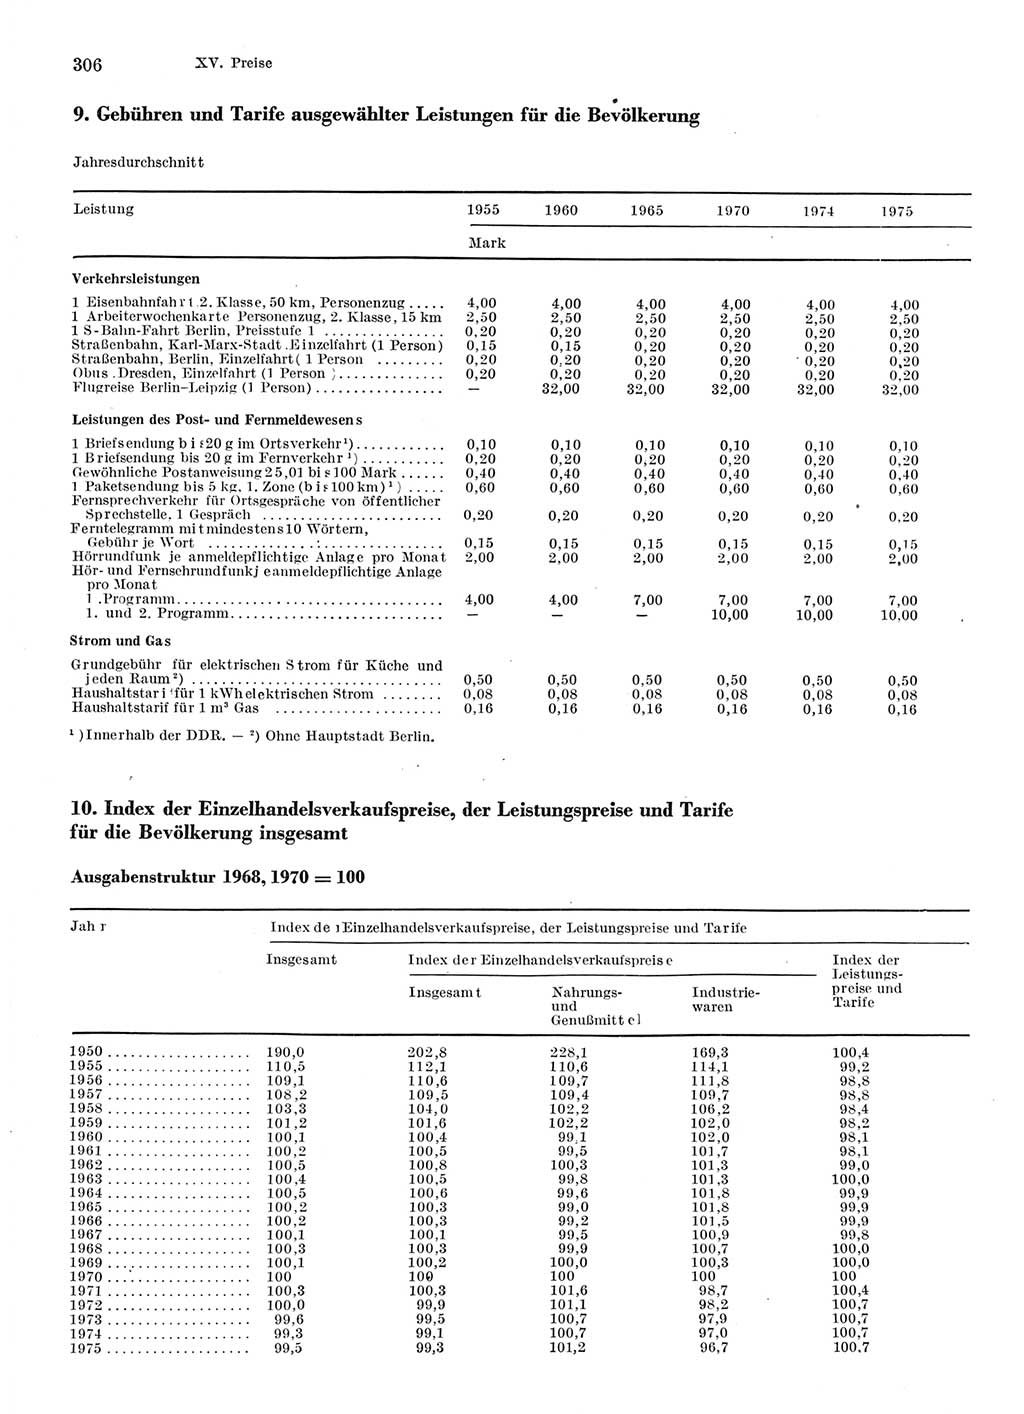 Statistisches Jahrbuch der Deutschen Demokratischen Republik (DDR) 1976, Seite 306 (Stat. Jb. DDR 1976, S. 306)